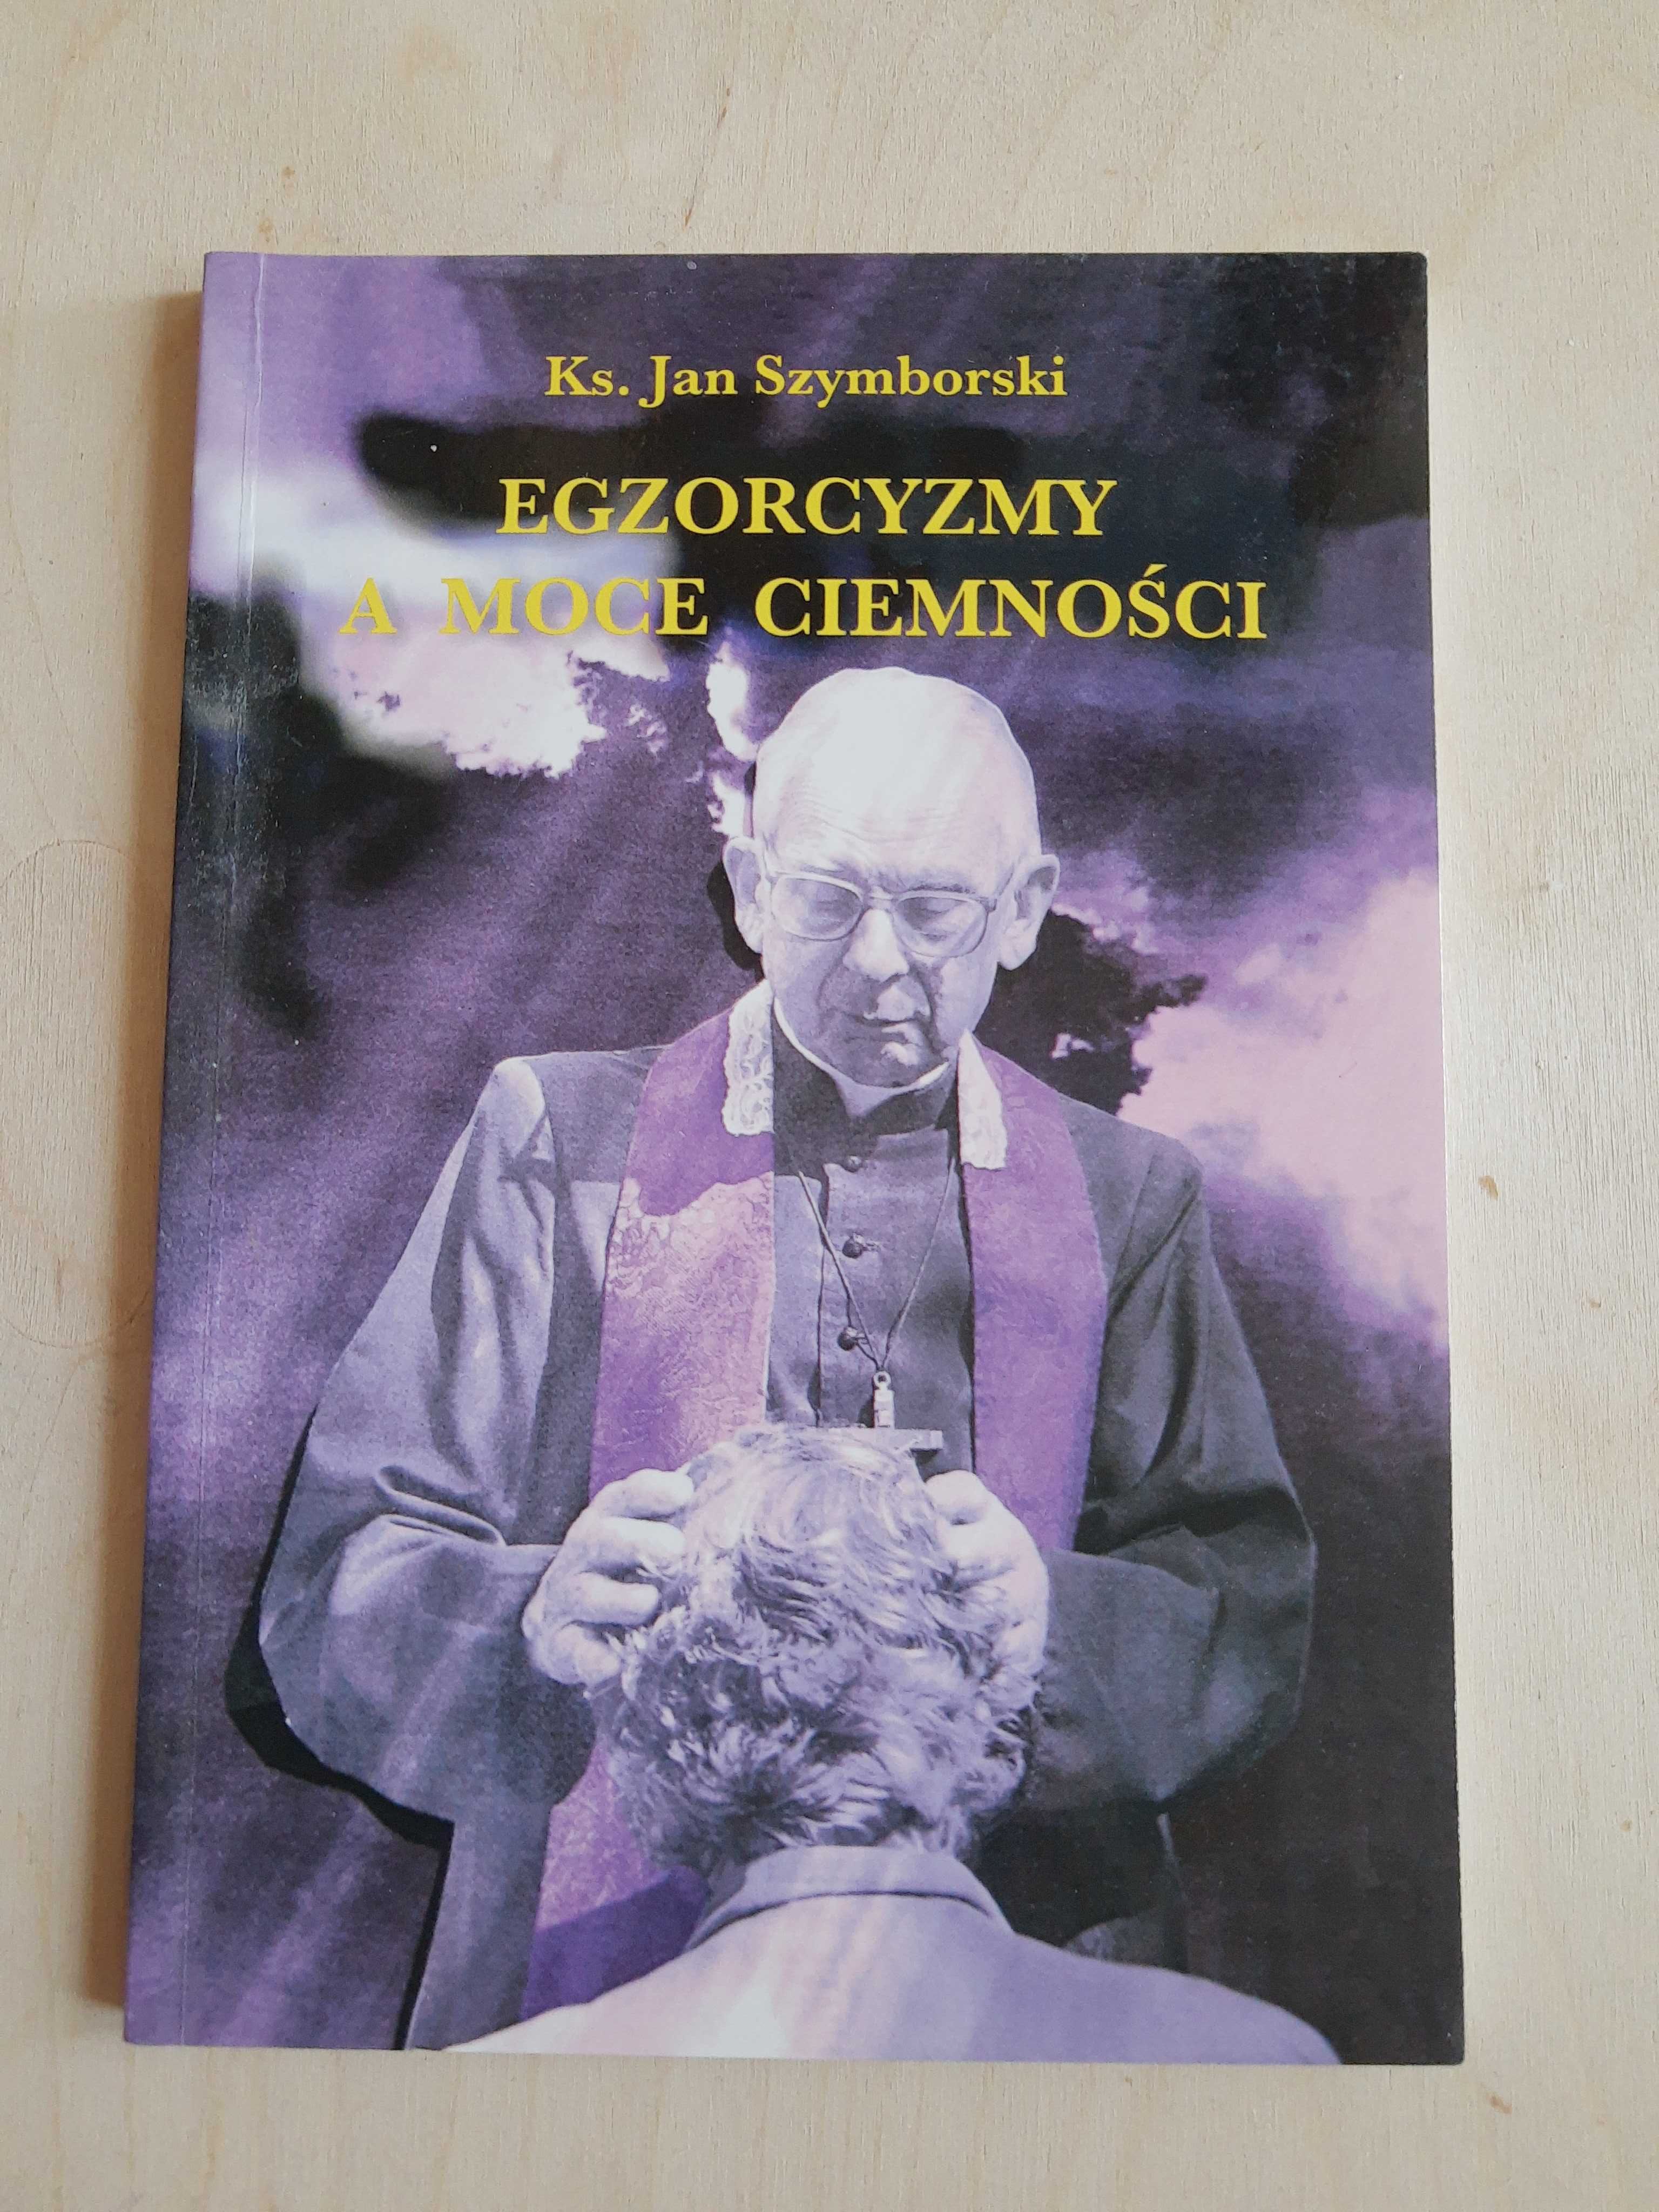 Ks.Jan Szymborski "Droga wśród bezdroży"&"Egzorcyzmy a moce ciemności"